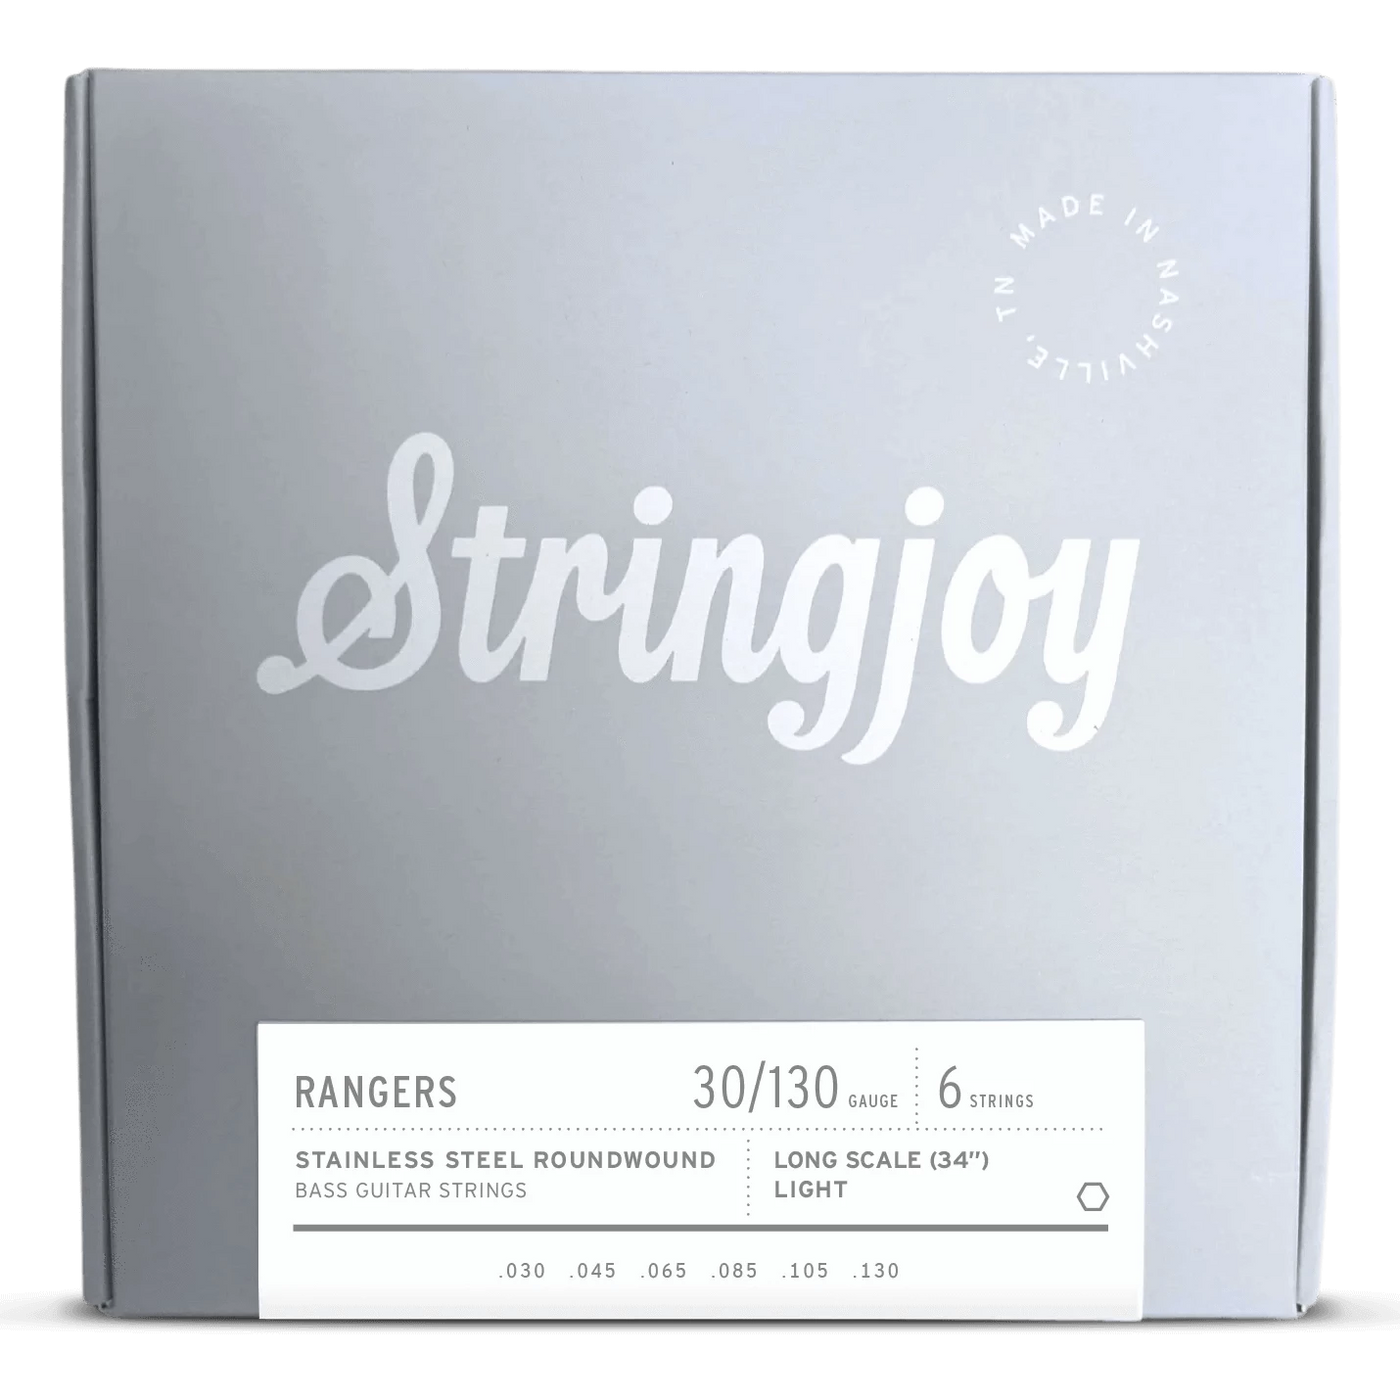 Stringjoy Long Scale Rangers Light Gauge 6 (30-130) Cuerdas de Bajo Eléctrico Acero Inoxidable